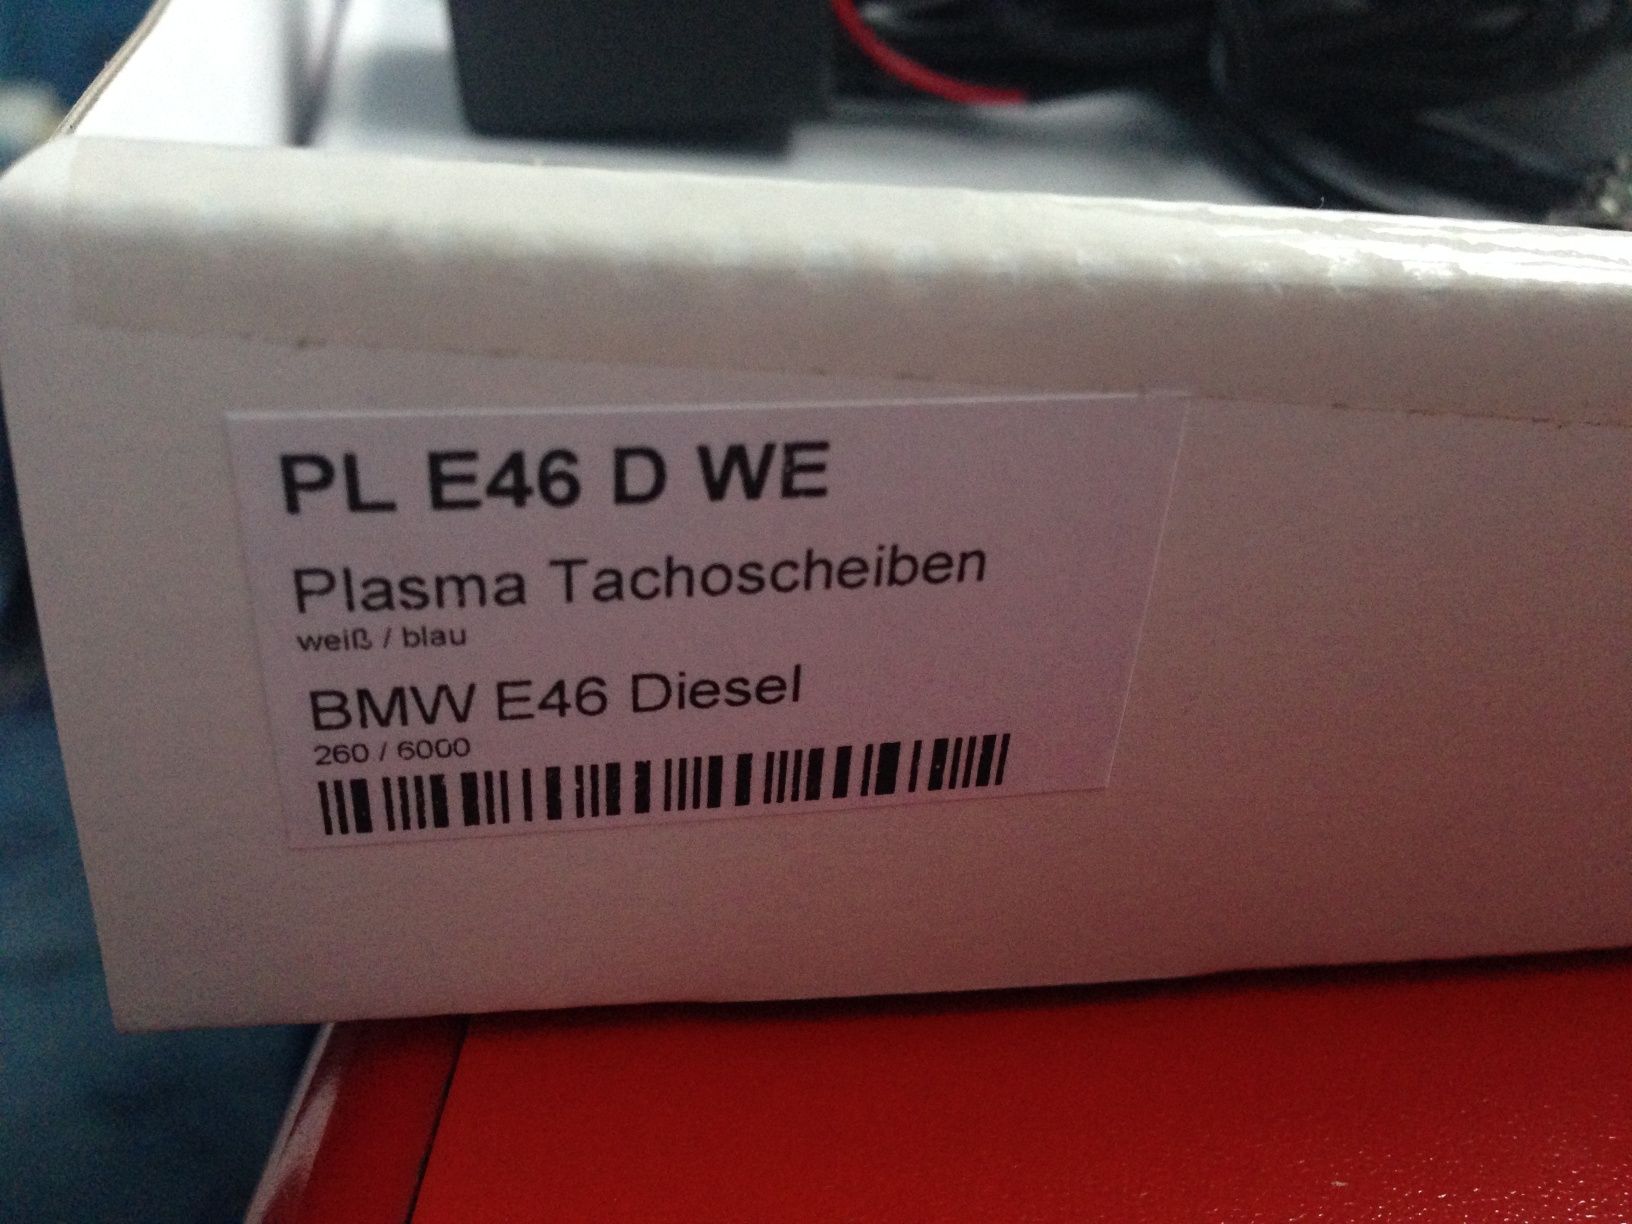 Plasma ceasuri bord ,E46 diesel,firma Innoparts,noi